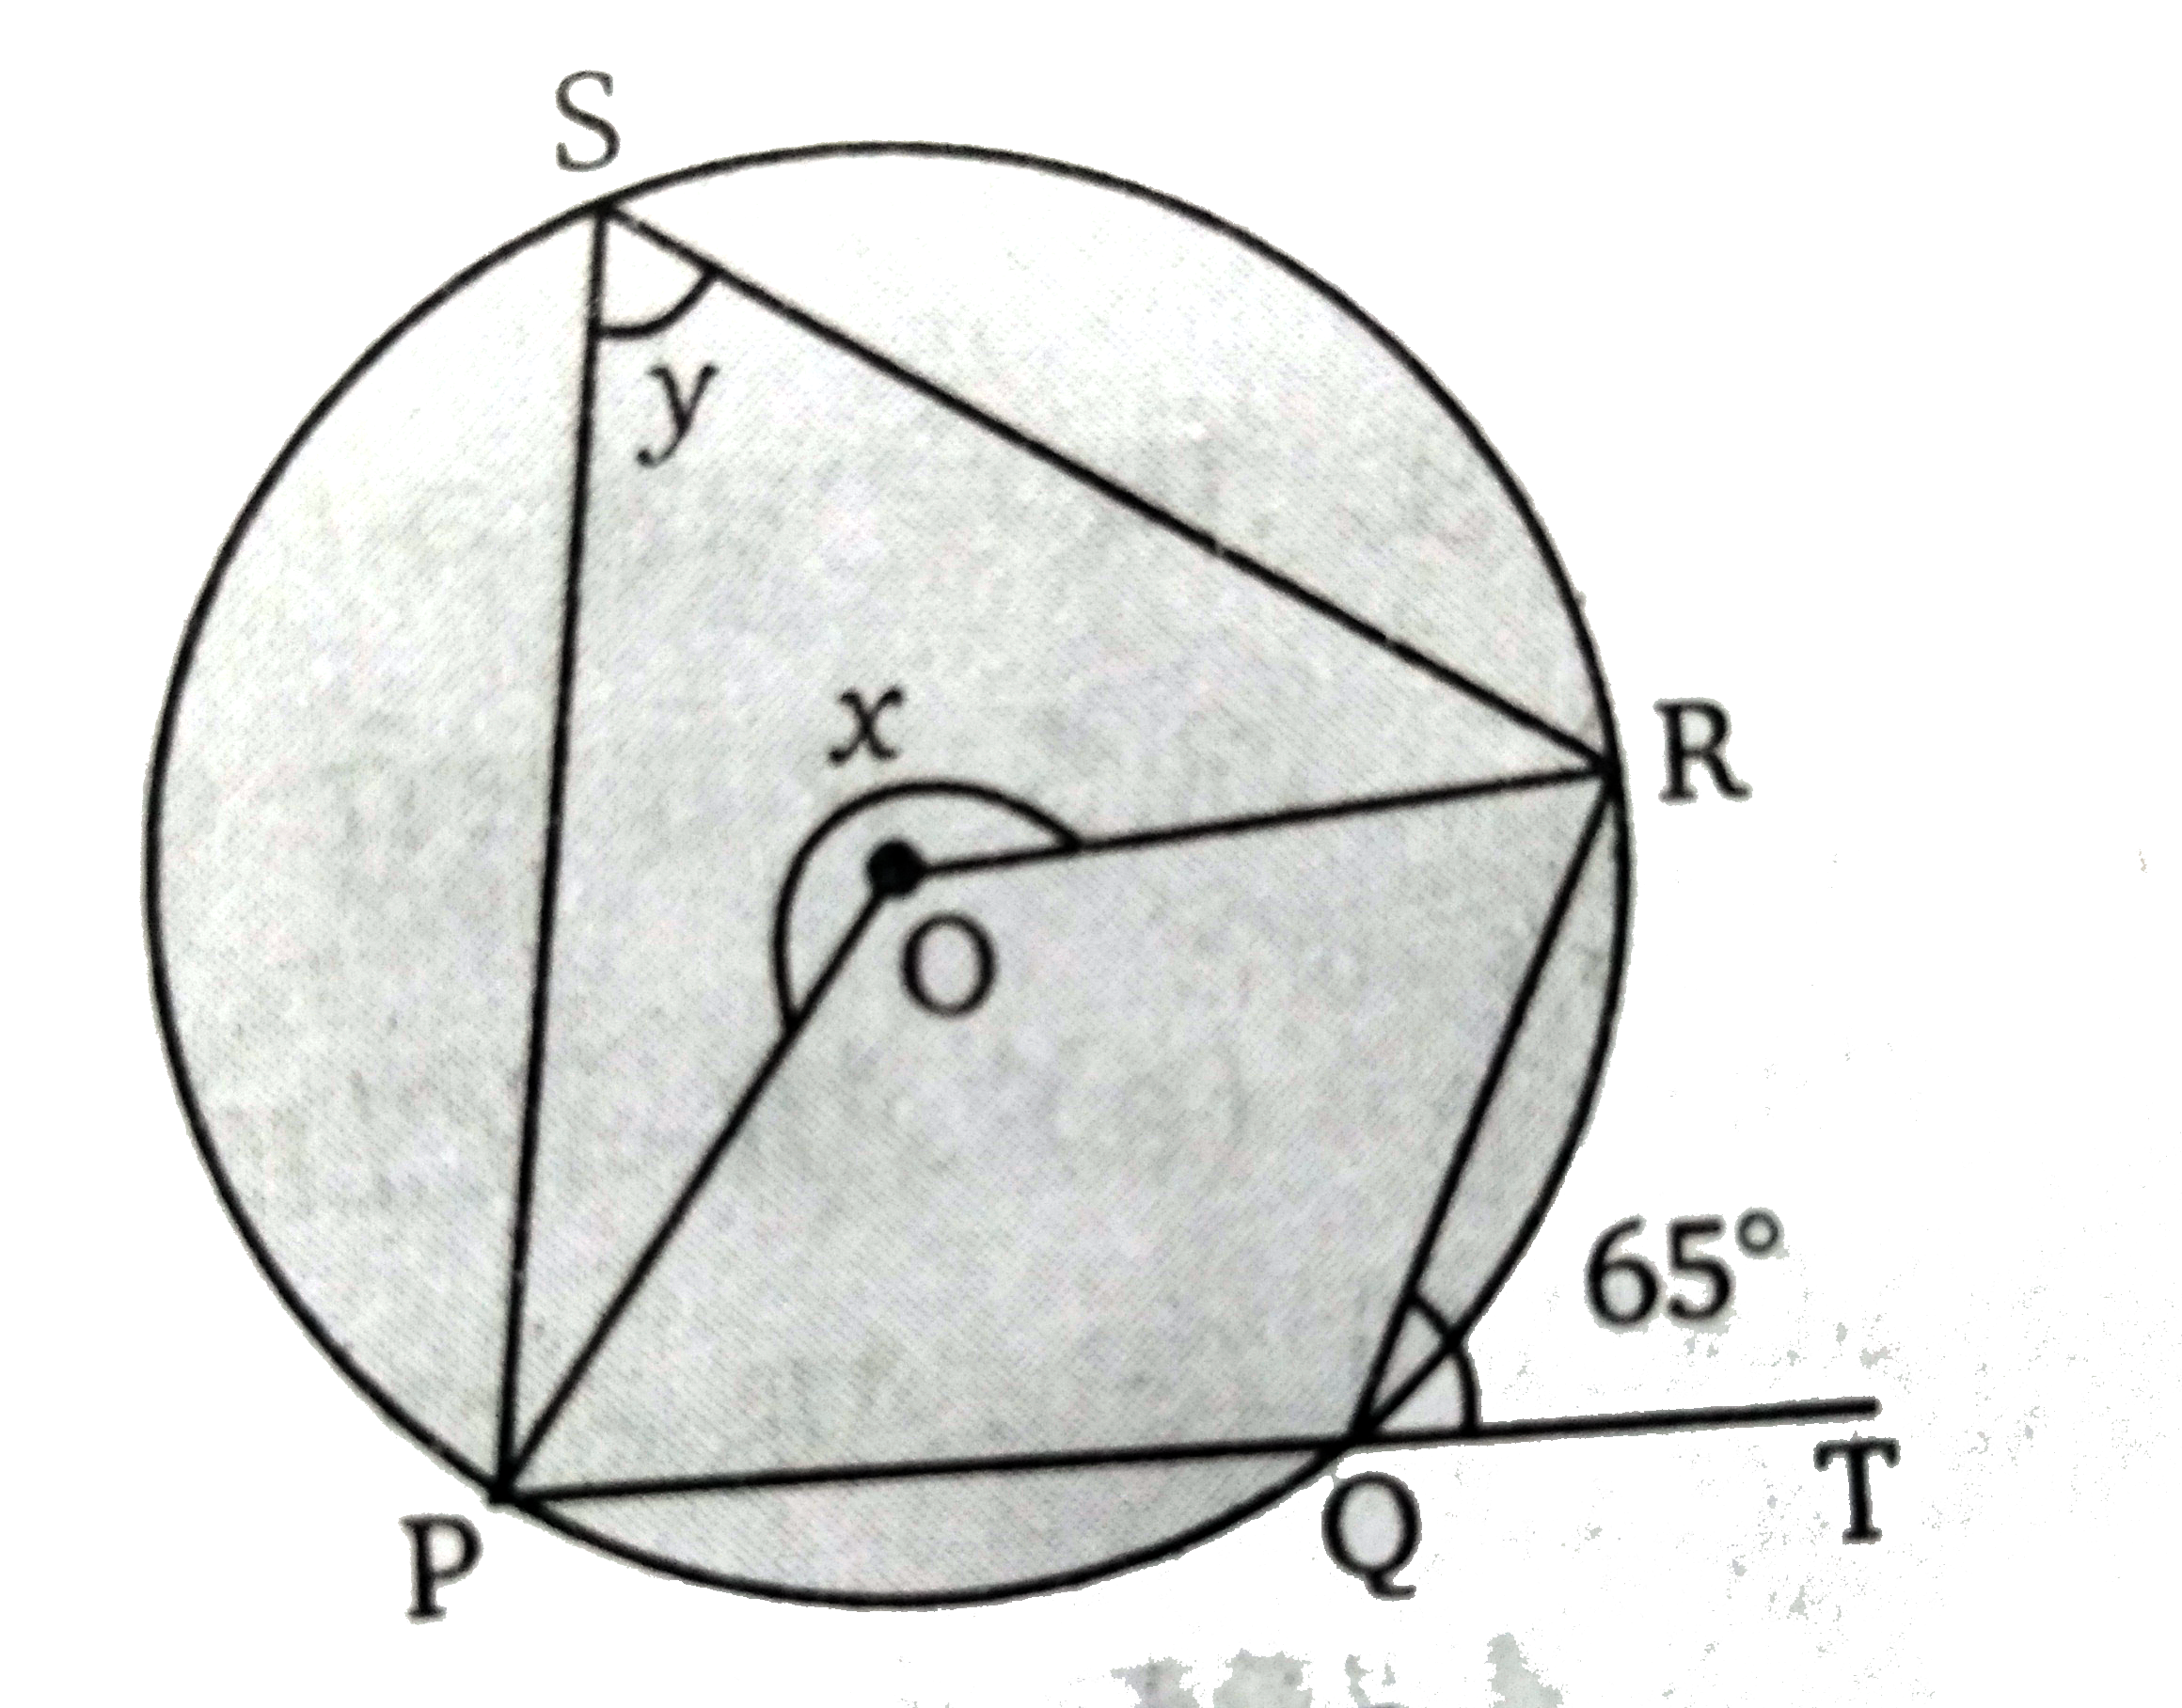 चित्र में,  O वृत्त का केन्द्र है, PQT एक सरल रेखा है। तथा angle RQT = 65 ^(@)  तब x  व  y  के मान ज्ञात कीजिए।